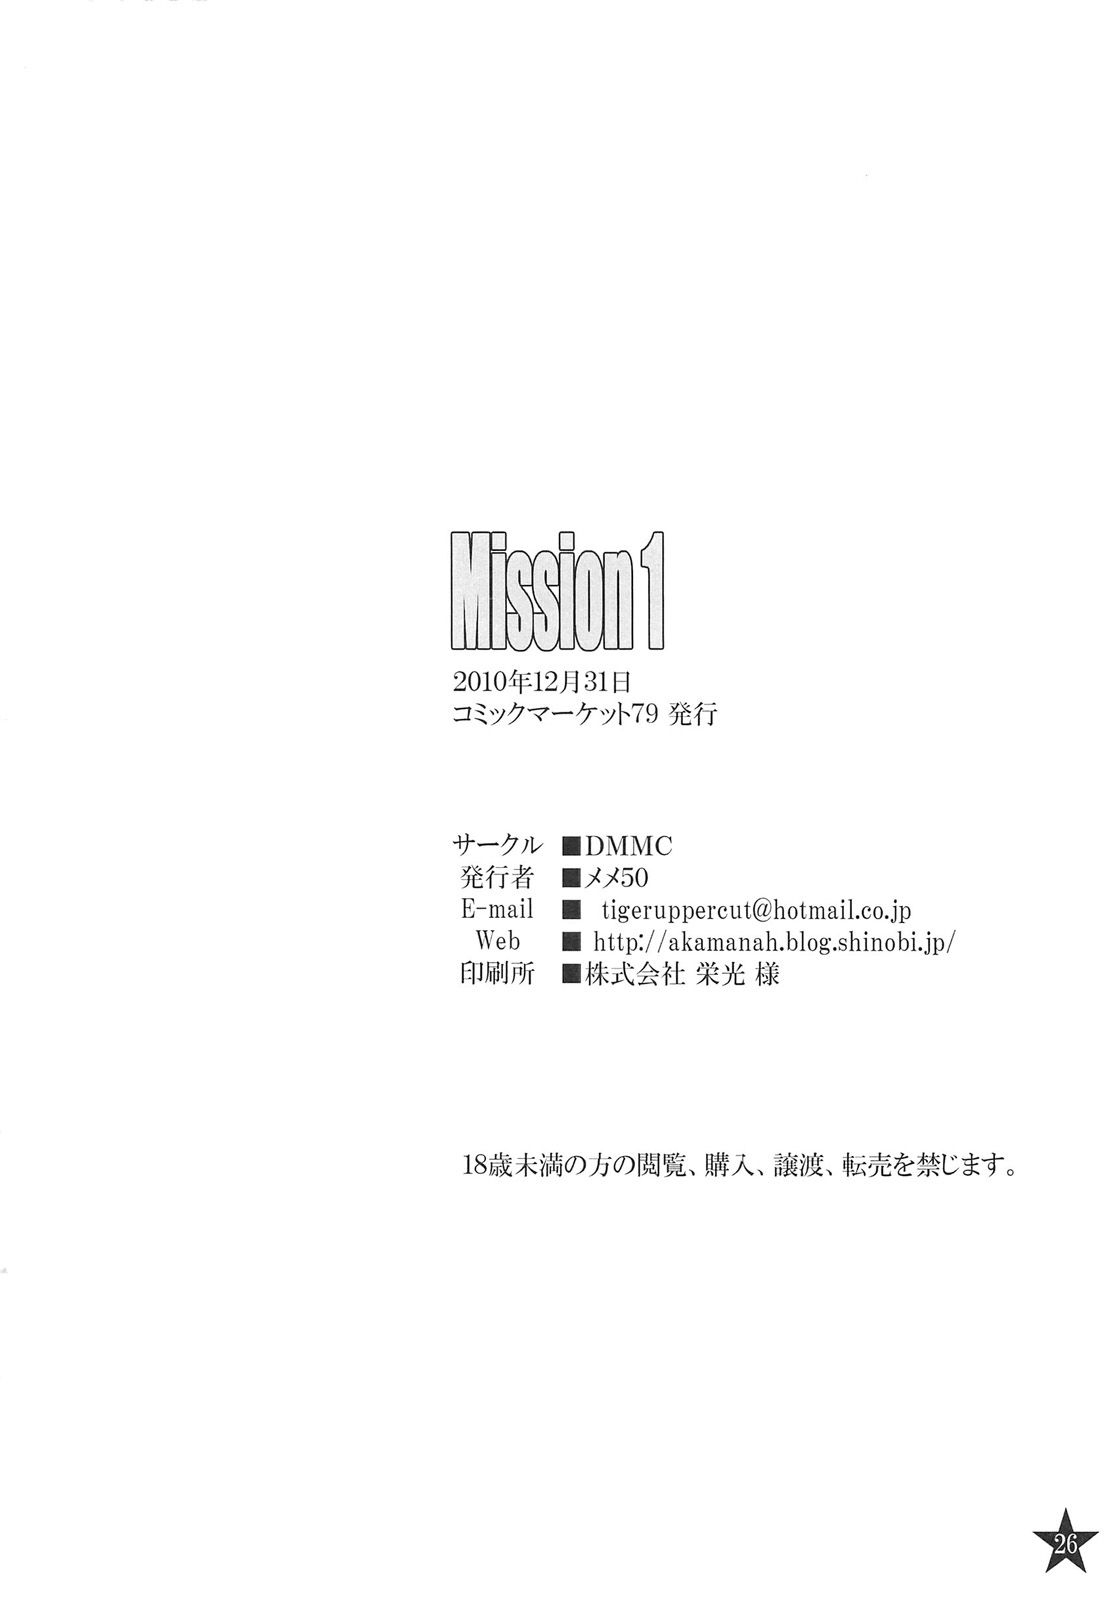 Mission 1 - 25